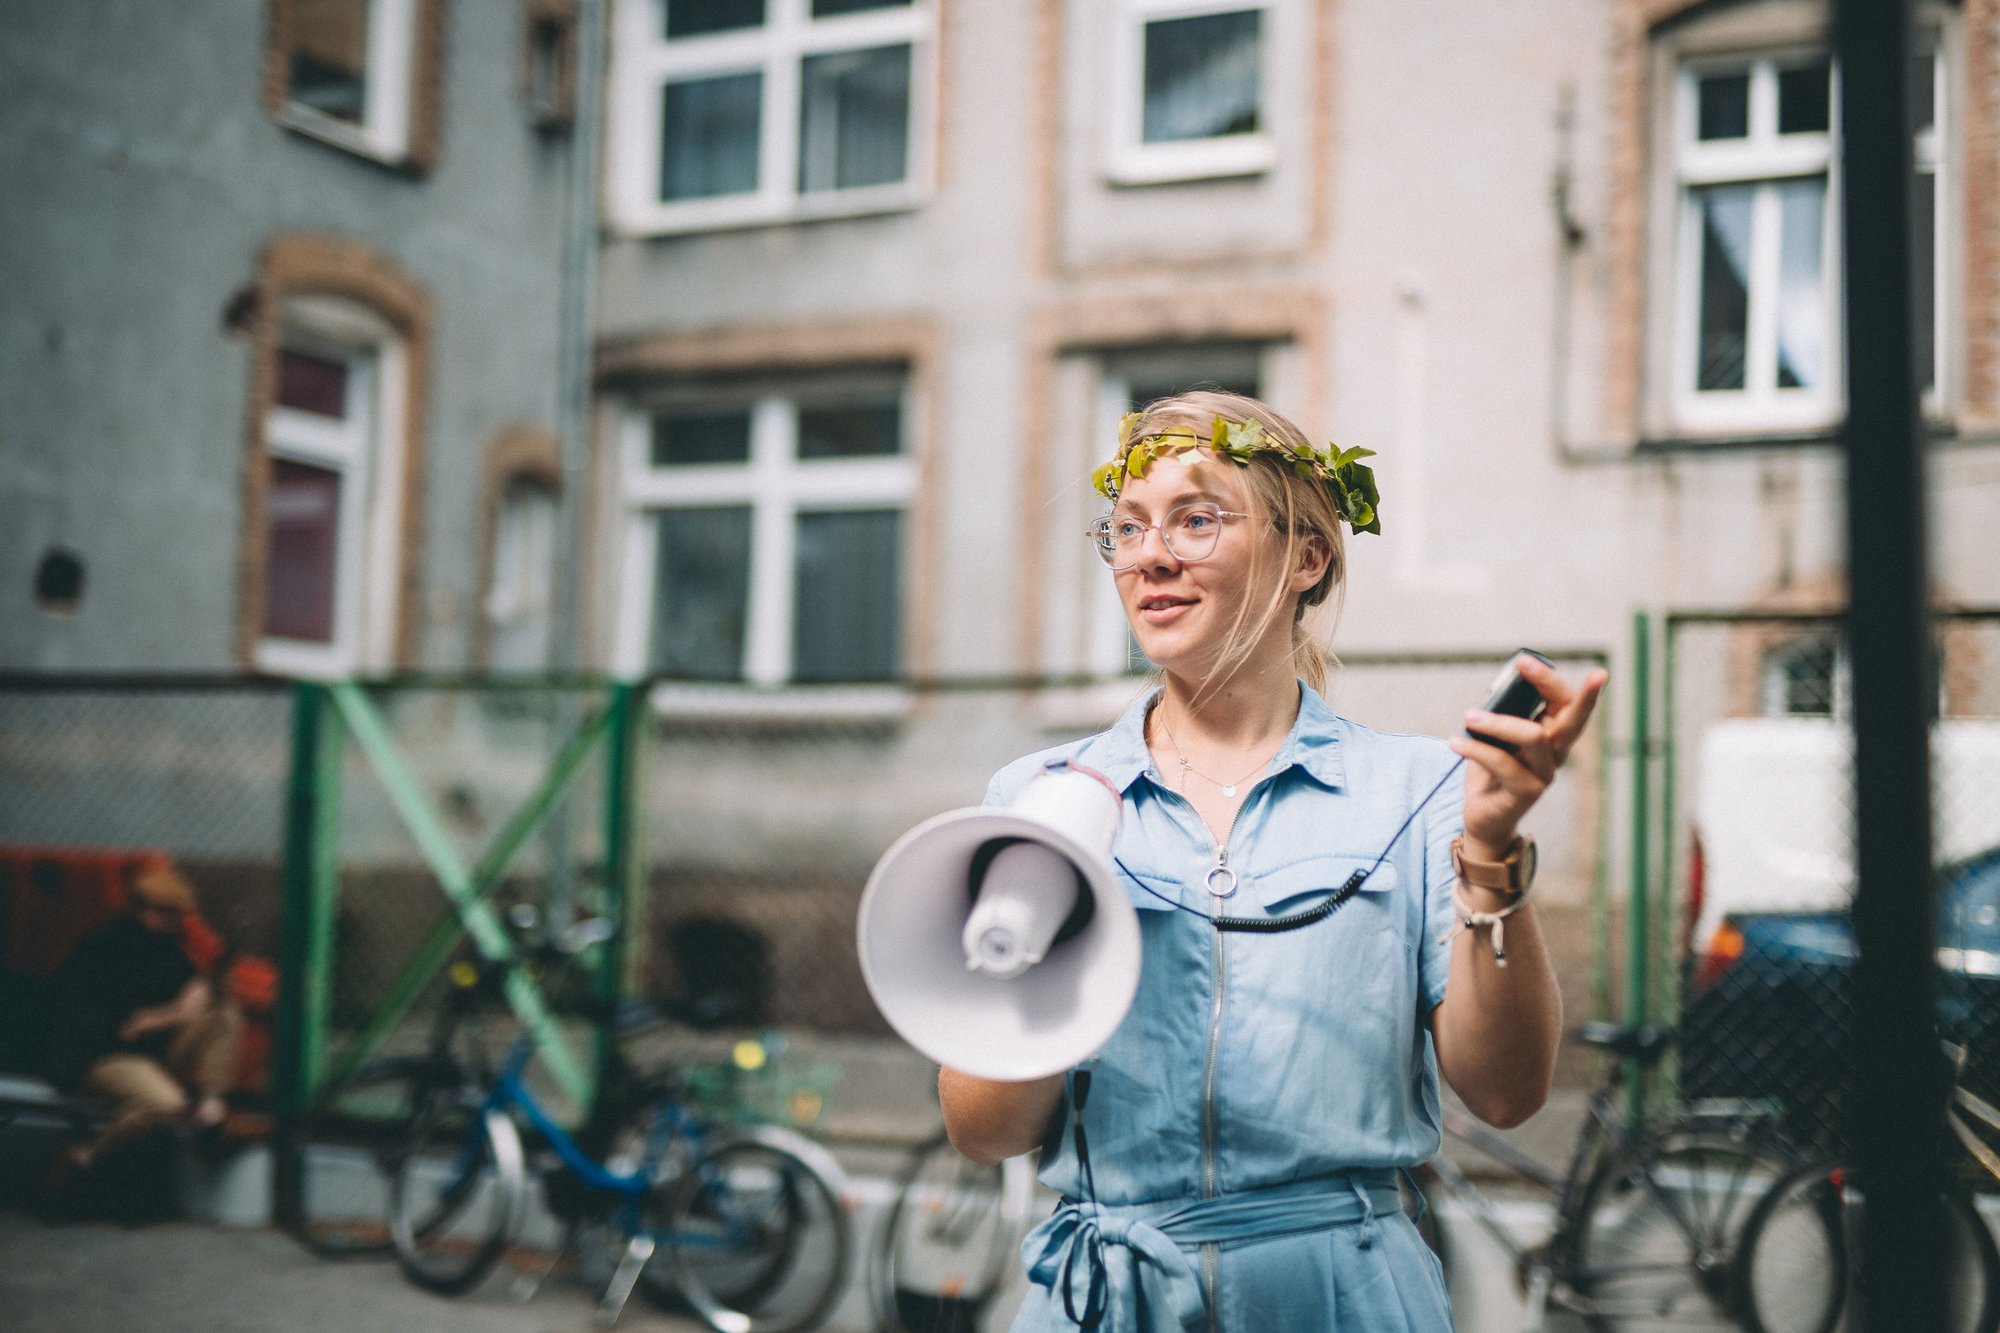 Młoda kobieta z wiankiem na głowie i megafonem w ręce stoi przed budynkiem naszej siedziby przy ulicy Curie-Skłodowskiej 63a.